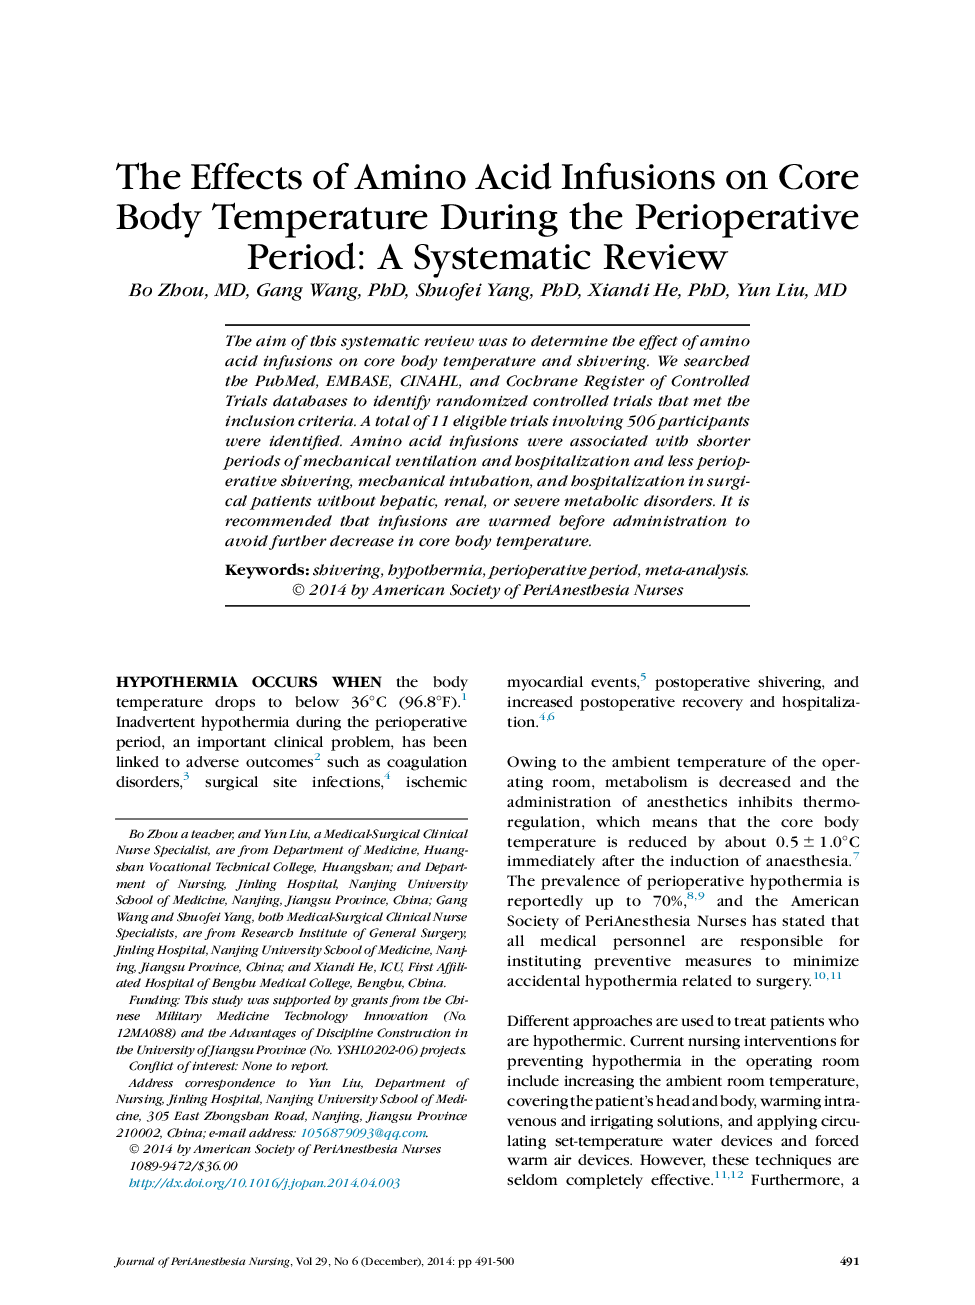 اثر تزریق آمینو اسید بر درجه حرارت بدن در طول دوره تجویز: یک بررسی سیستماتیک 